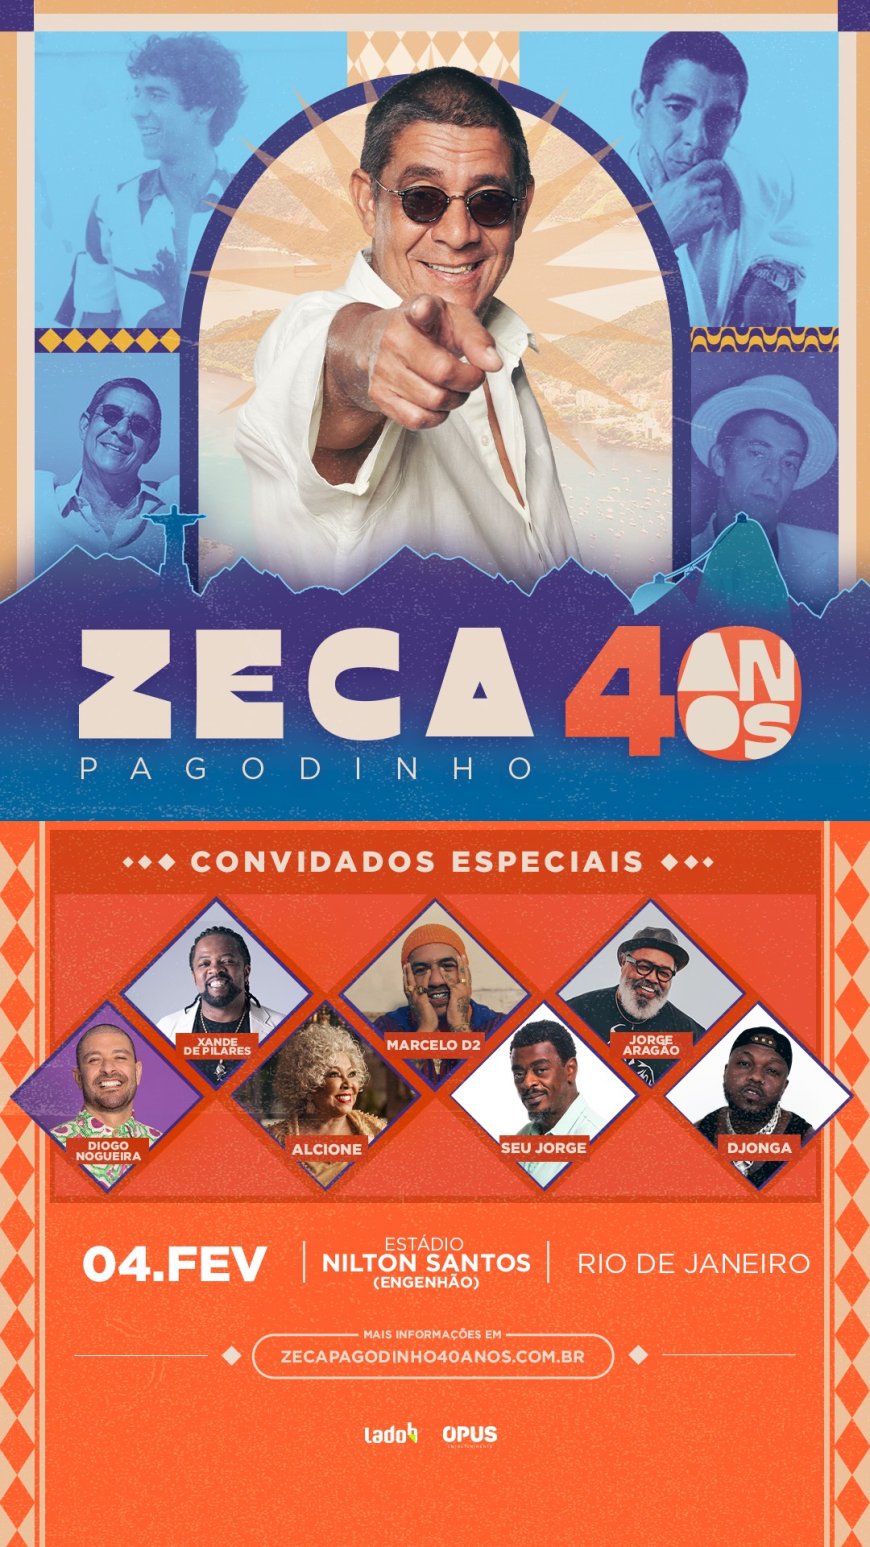 Zeca Pagodinho confirma participação especial de Djonga em gravação de DVD no Rio de Janeiro